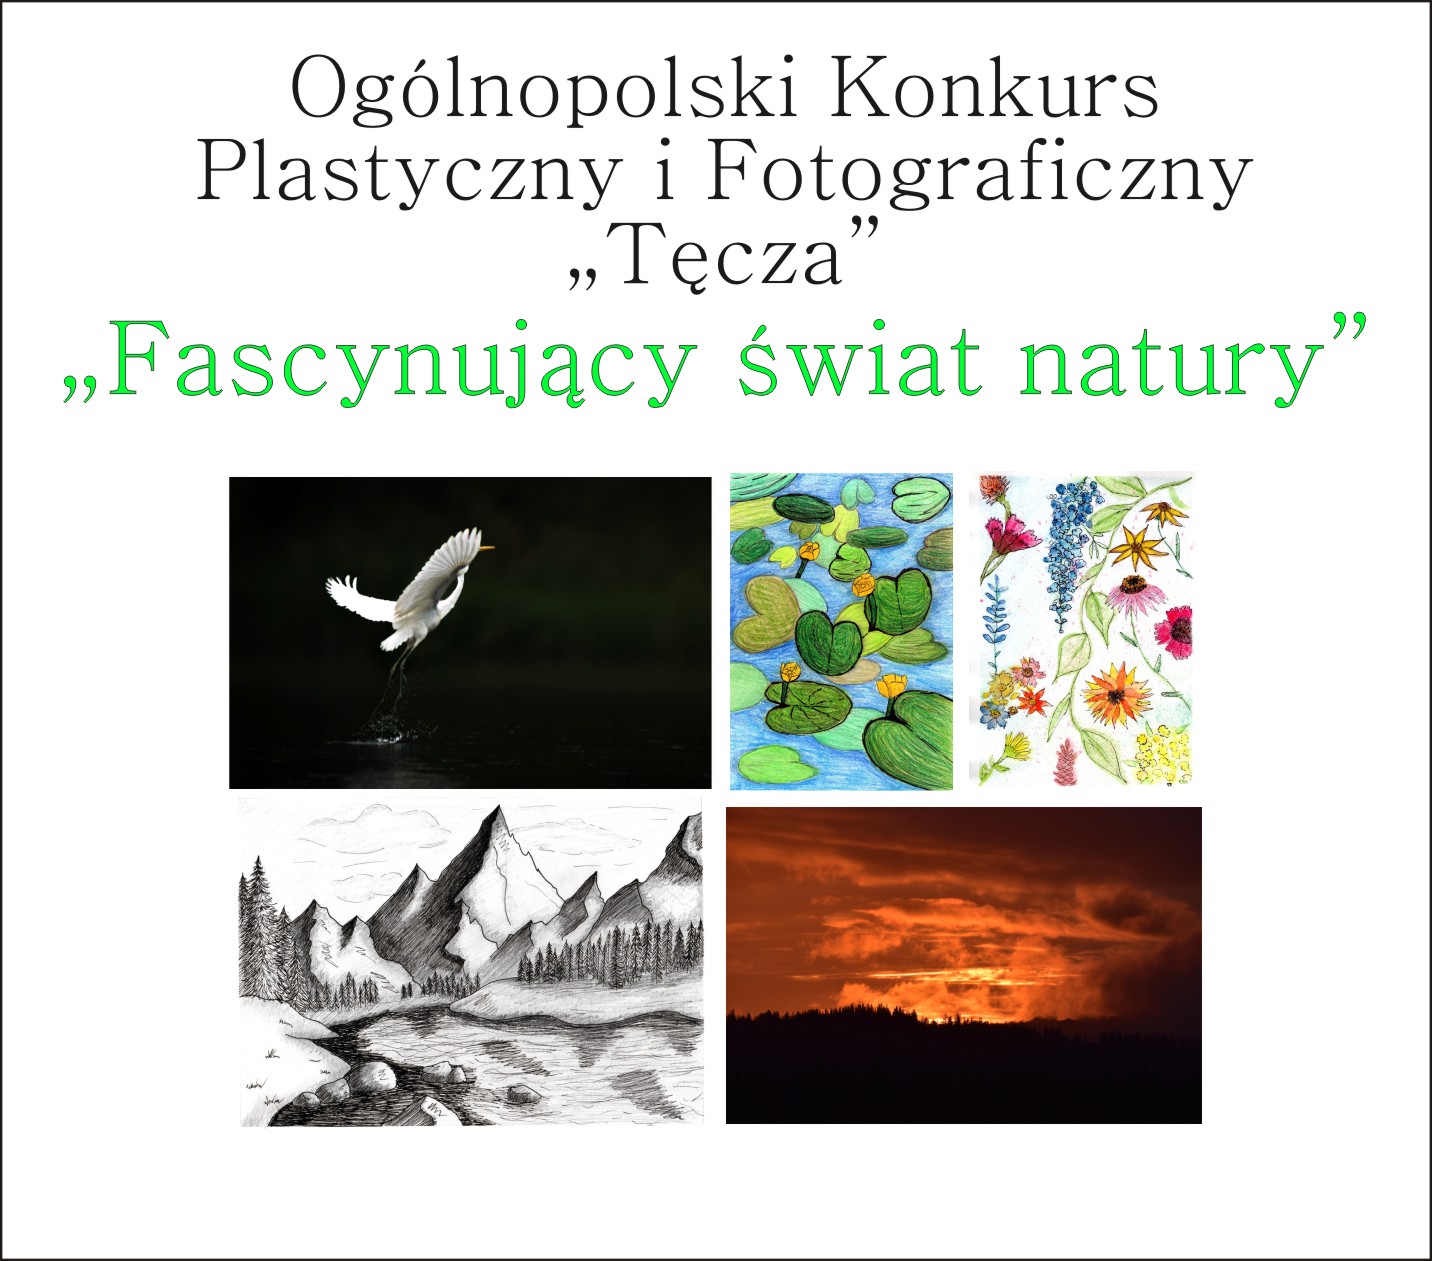 Ogólnopolski Konkurs Plastyczny i Fotograficzny "Tęcza"